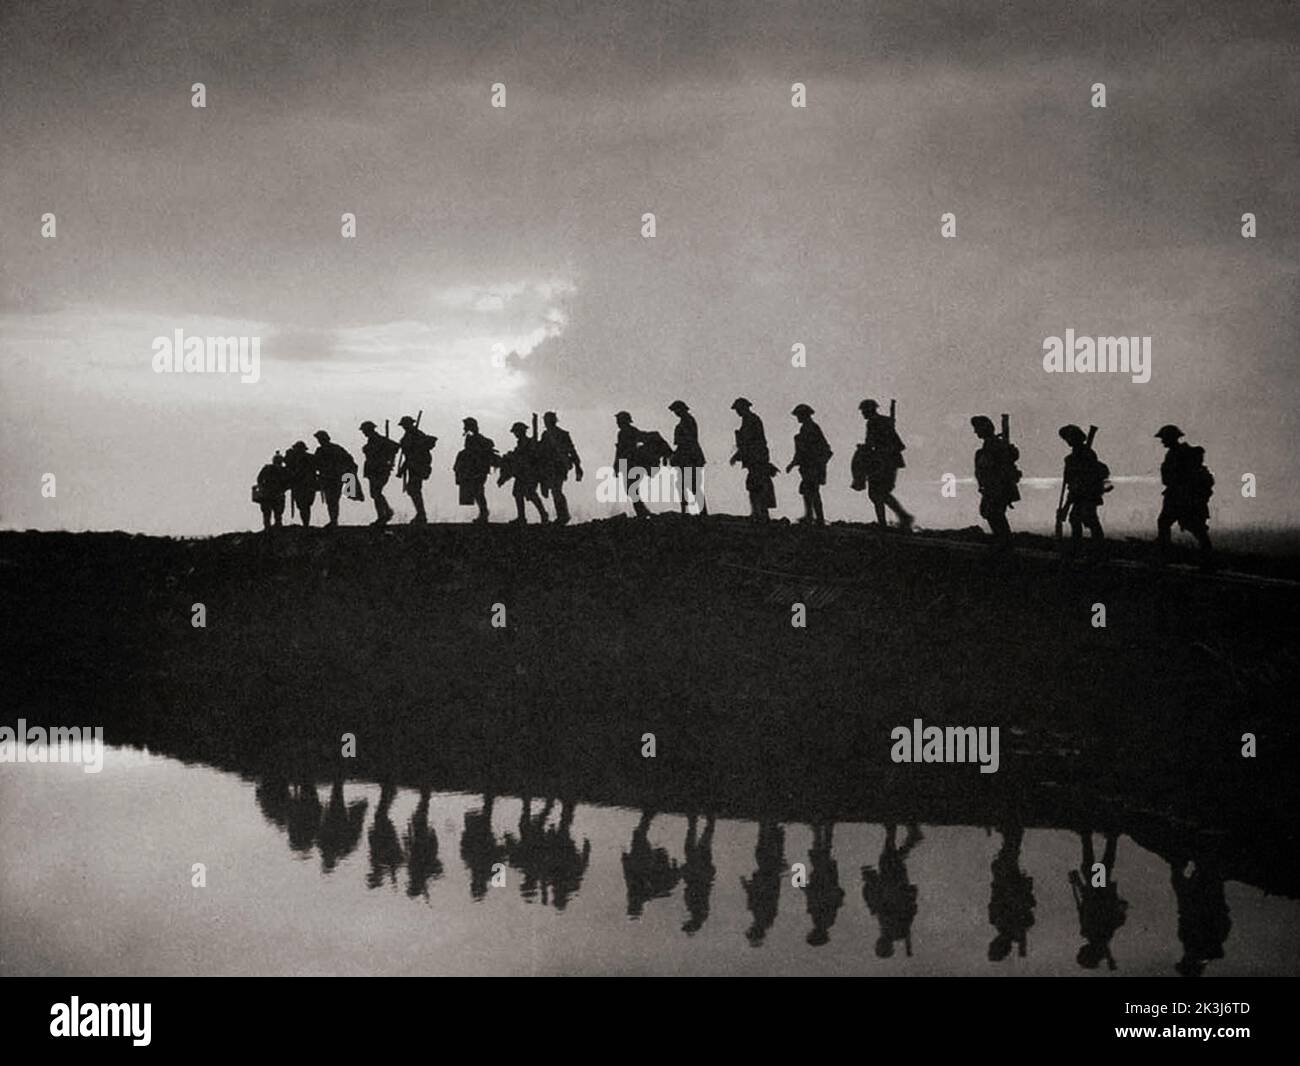 Les soldats ont fait des silhouettes contre la marche du ciel pendant la troisième bataille d'Ypres en 1917 – conçue par Sir Douglas Haig pour capturer la crête de Passchendaele. Photographie de Frank Hurley (1885 1962) un photographe australien. Banque D'Images